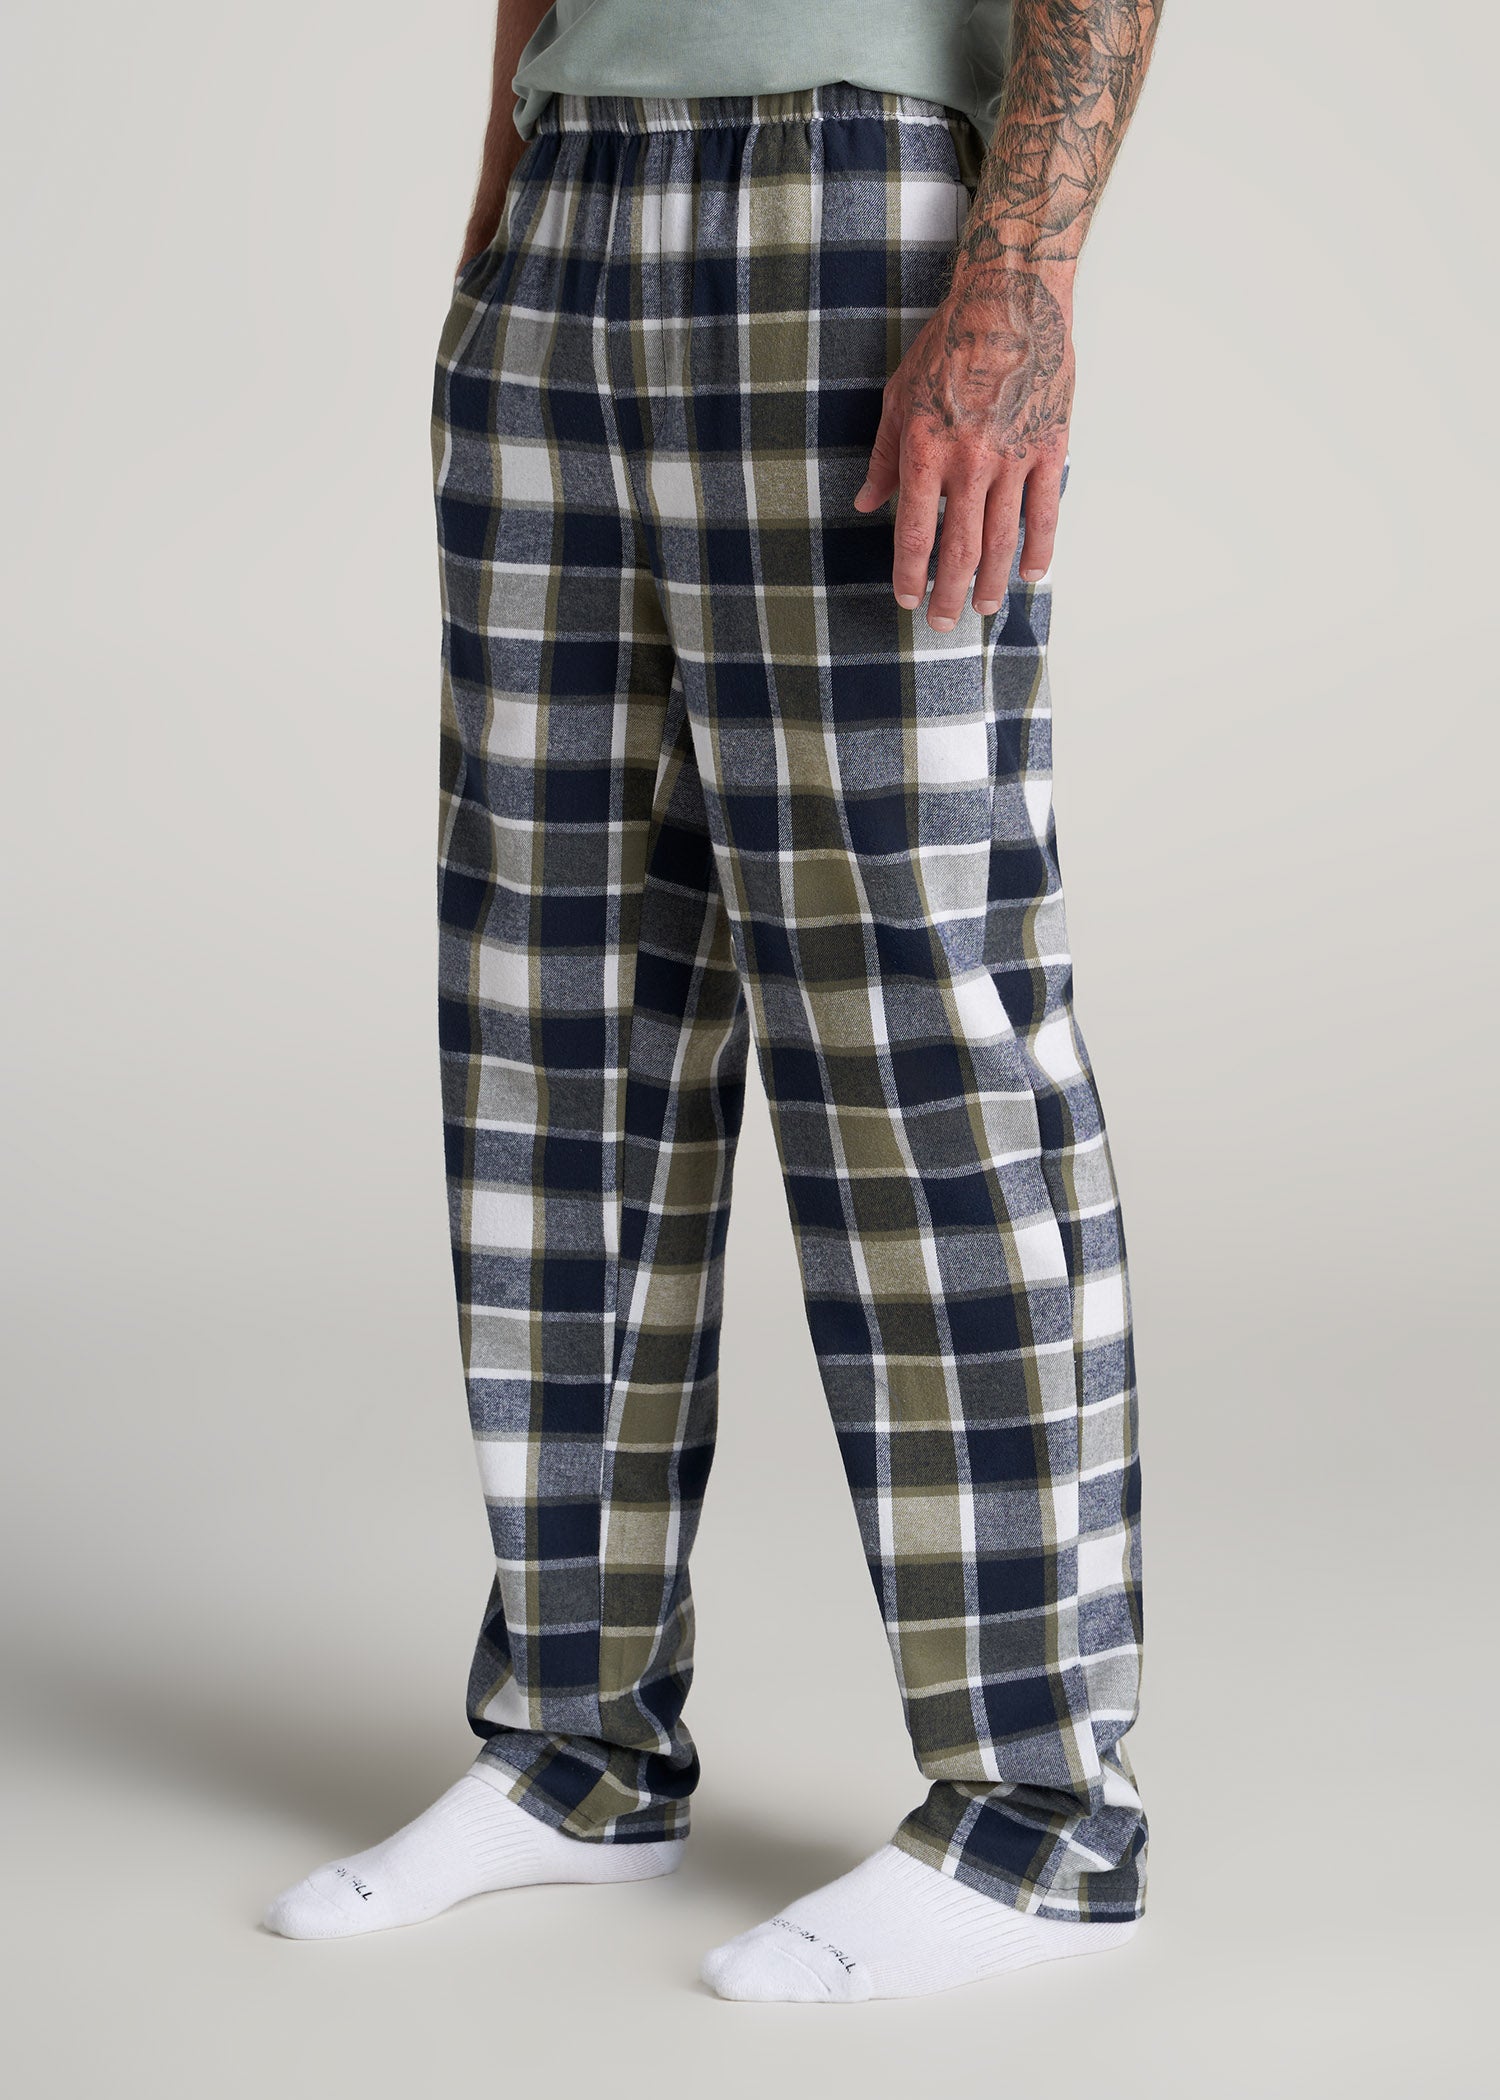 NWT Old Navy Blue Plaid Tartan Flannel Pajama Pants Sleep Lounge Men Large